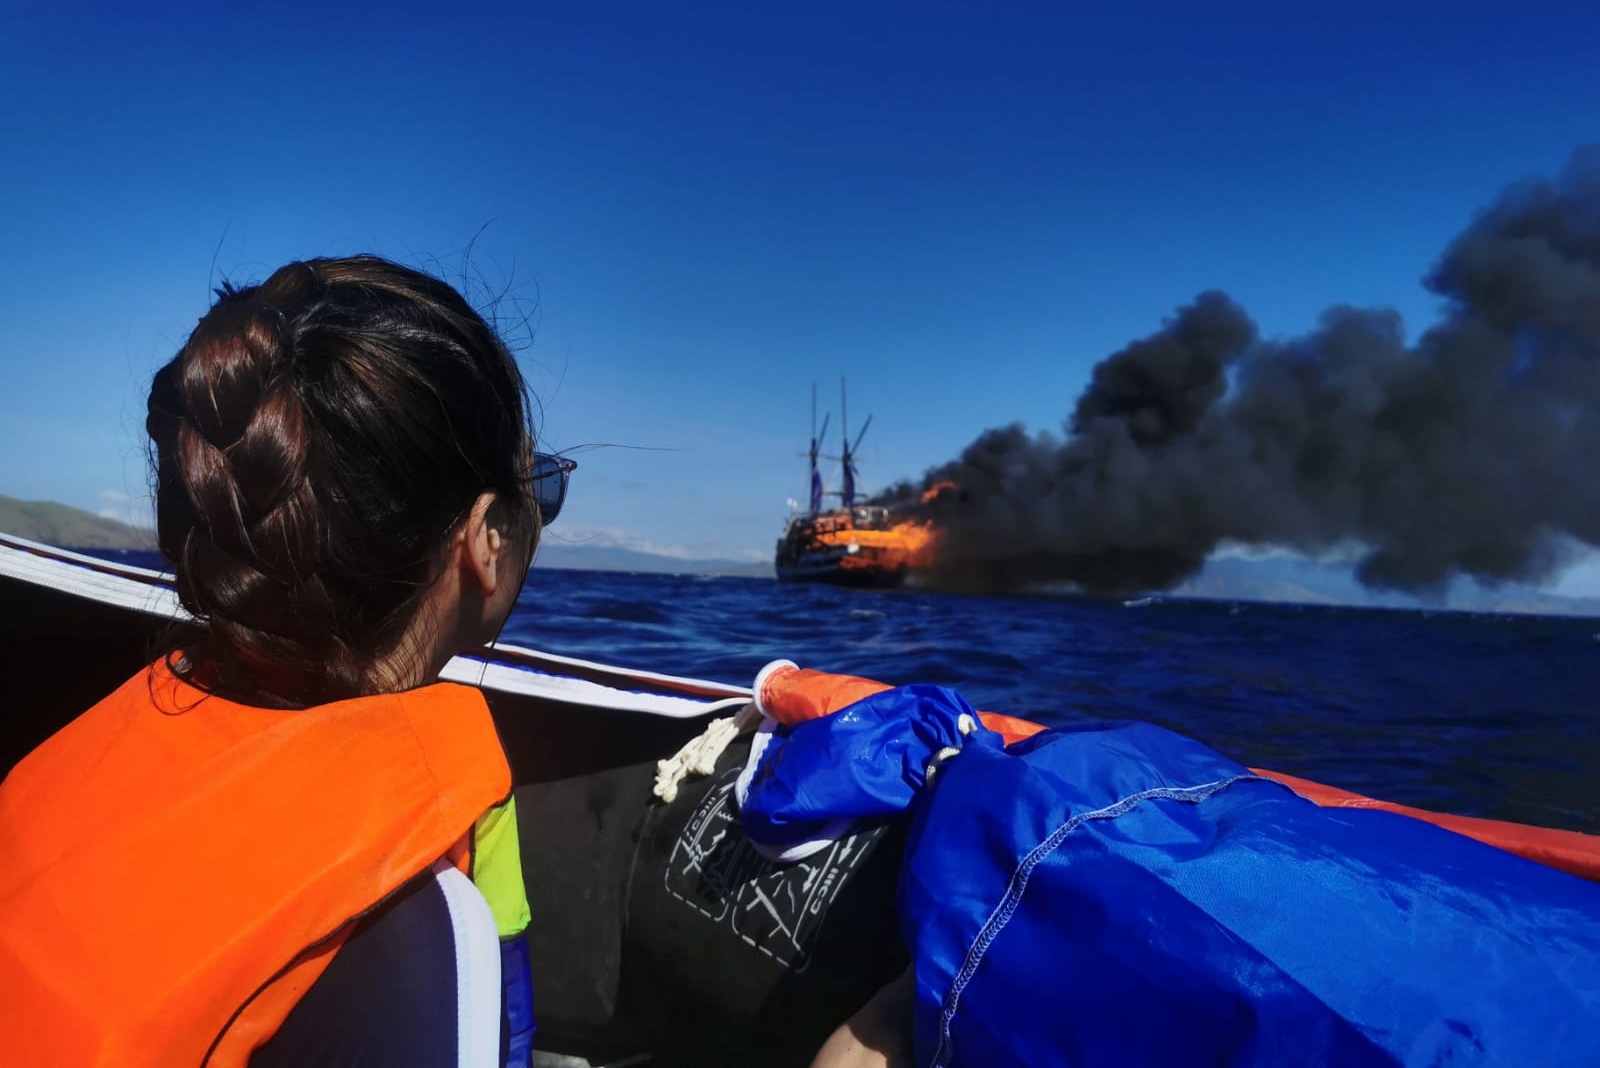 La evacuación de un barco de buceo en llamas es caótica, dicen los buzos del Reino Unido